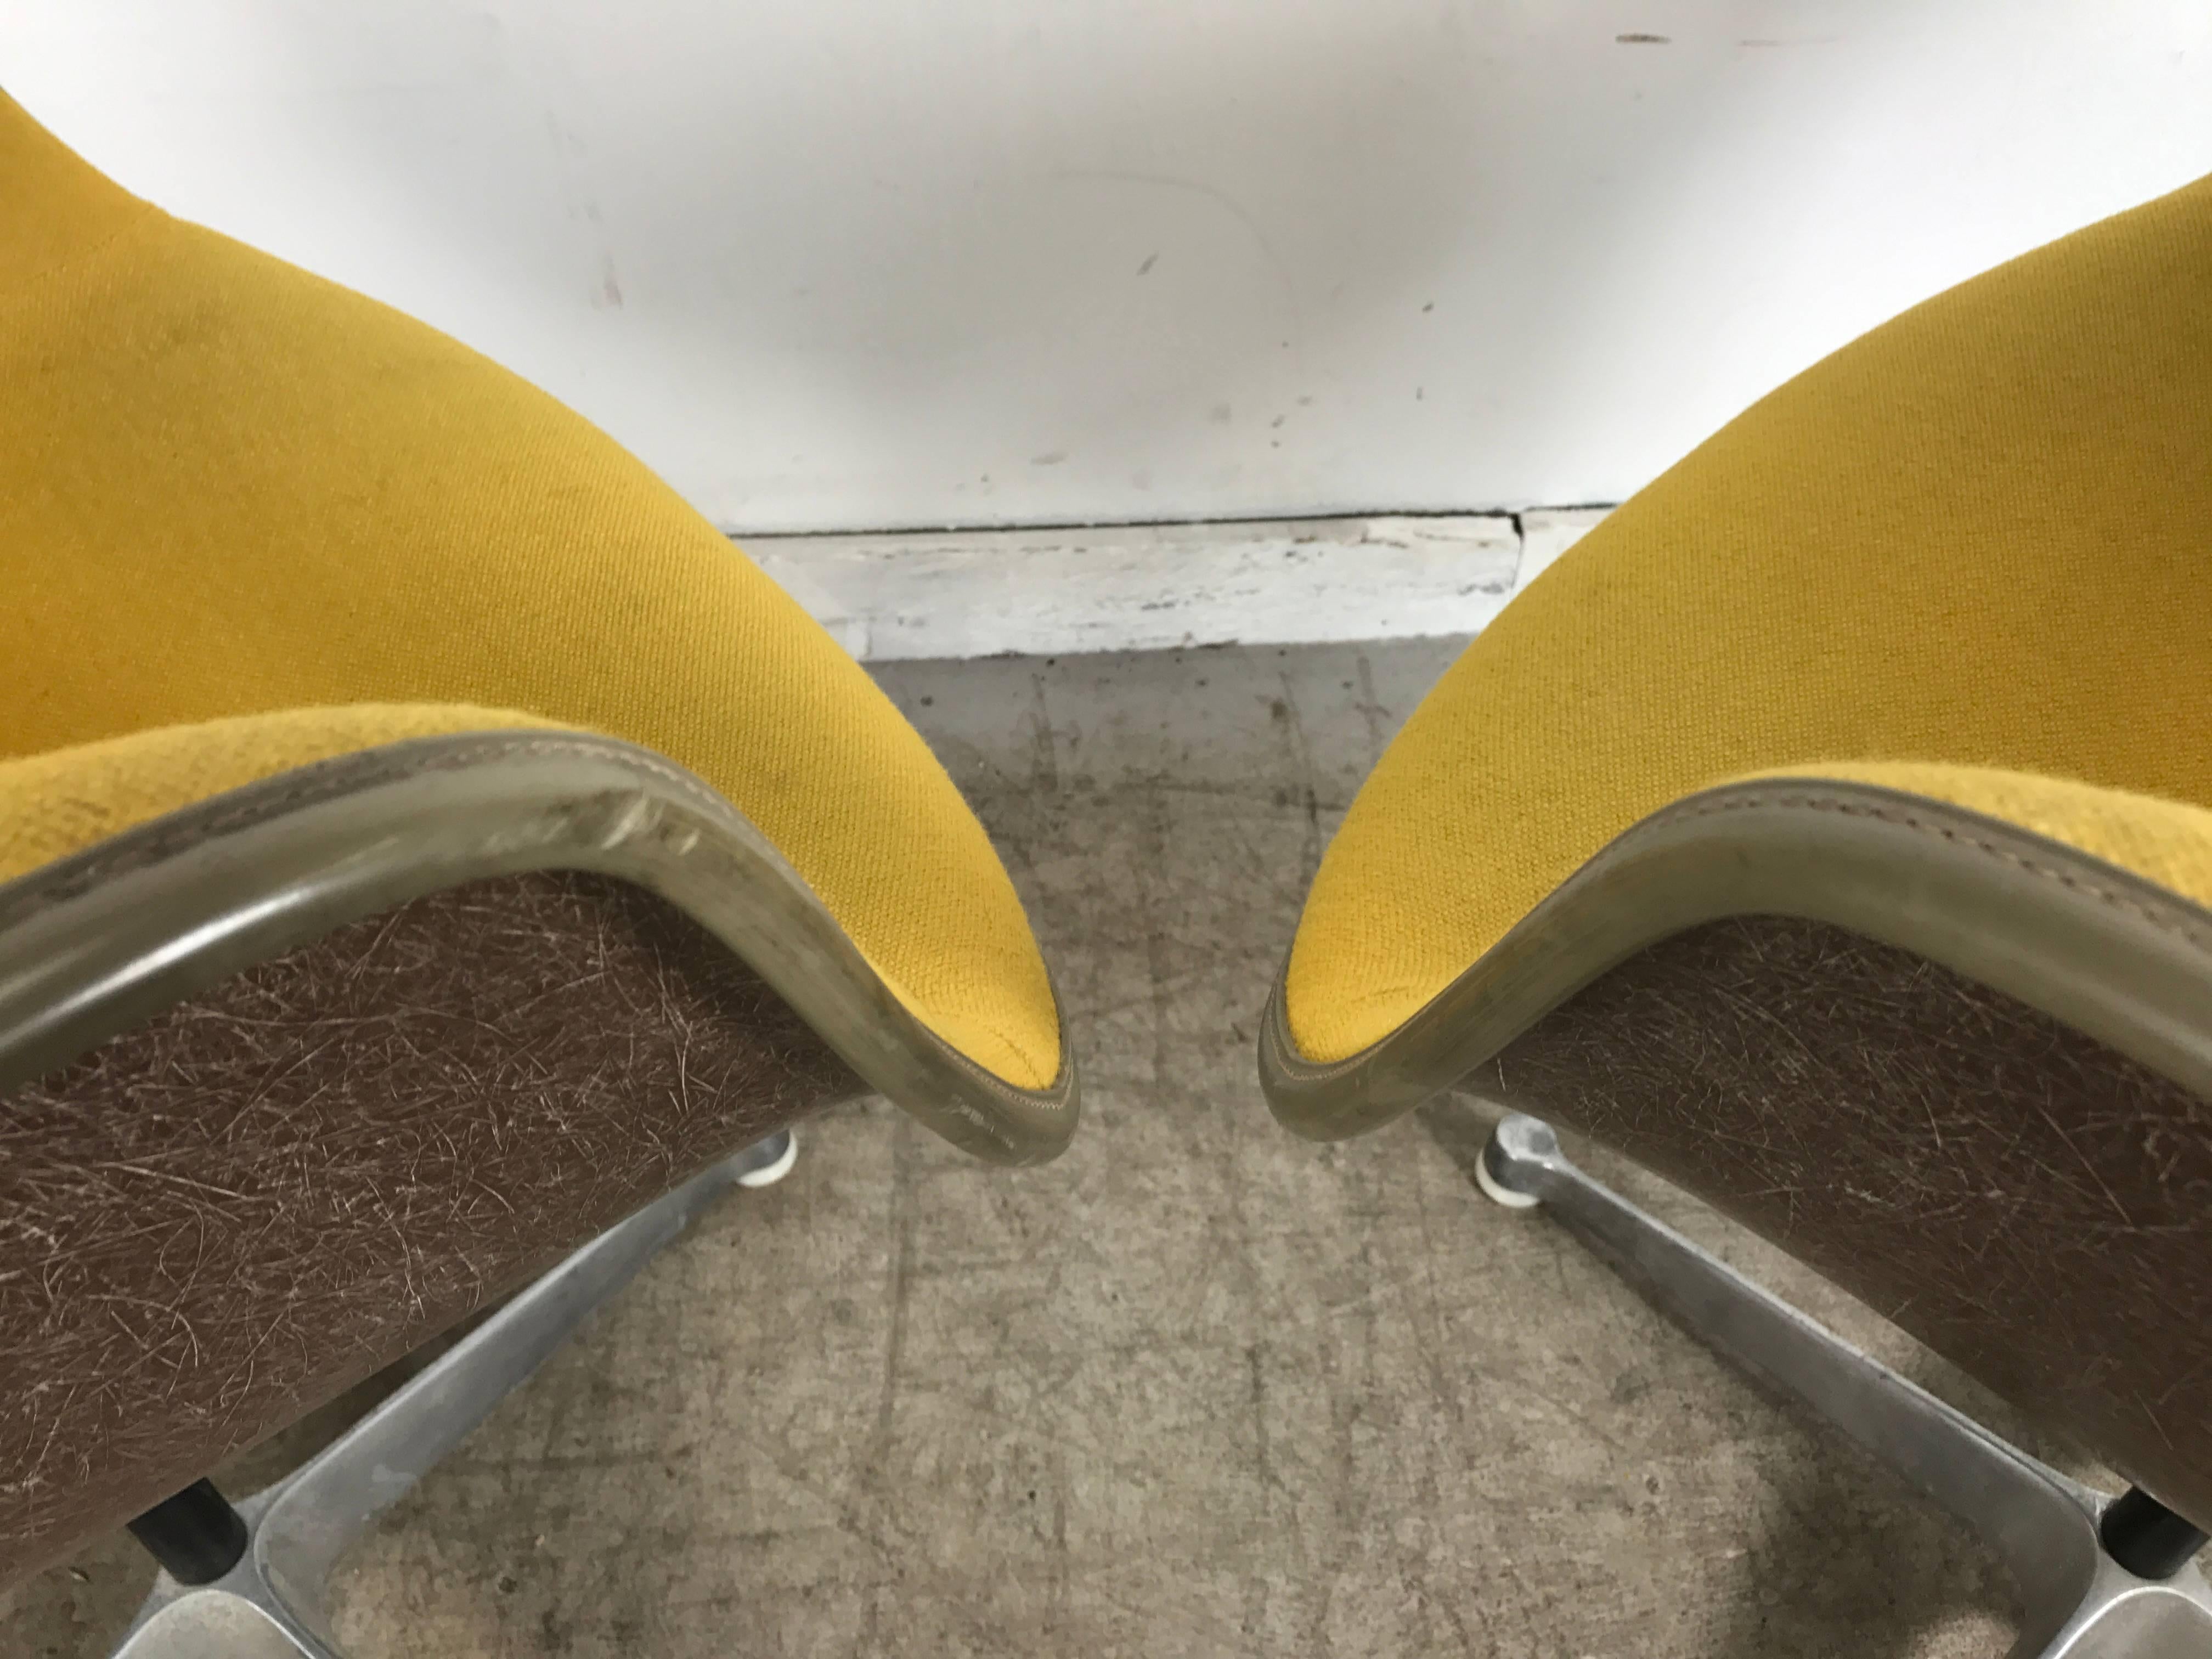 Paire de fauteuils Charles et Ray Eames à accoudoirs pivotants en coque rembourrée, combinaison inhabituelle de couleurs, coques en fibre de verre apparente de couleur marron précoce. Couvertures en tissu jaune moutarde, passepoil gris, base en